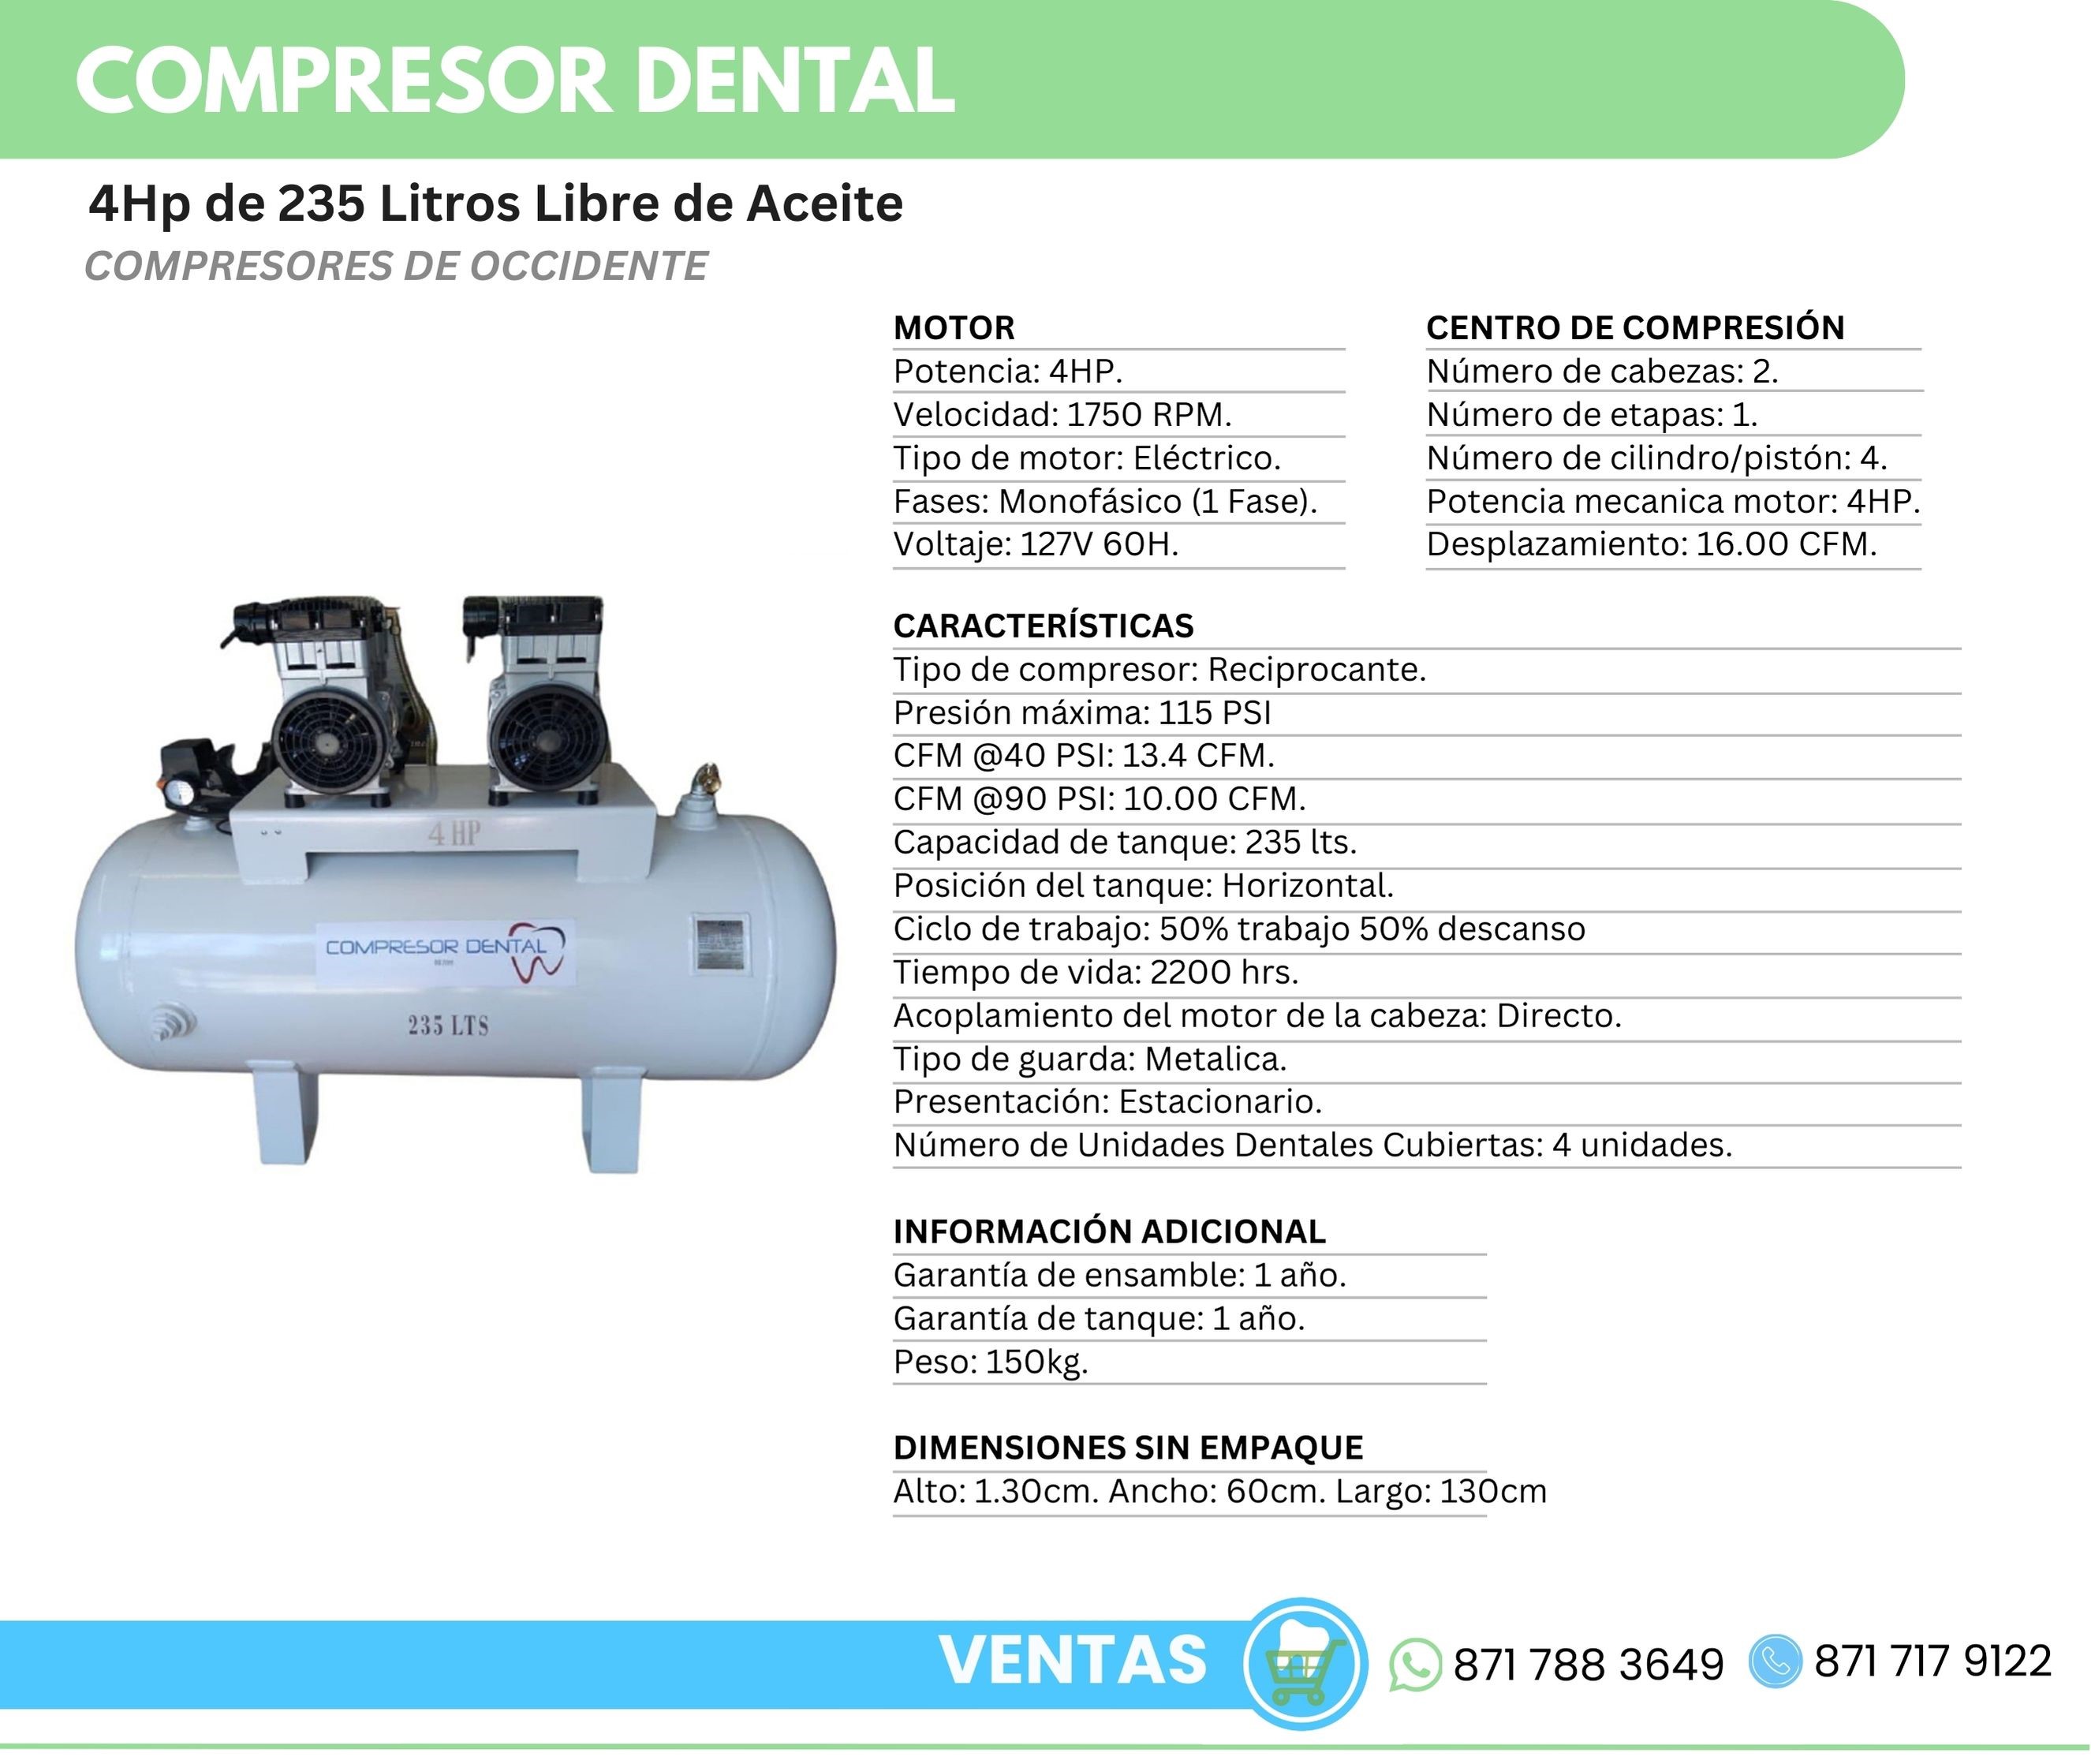 Compresor Dental 4Hp 235 Litros Libre de Aceite Compresores de Occidente Orthosign